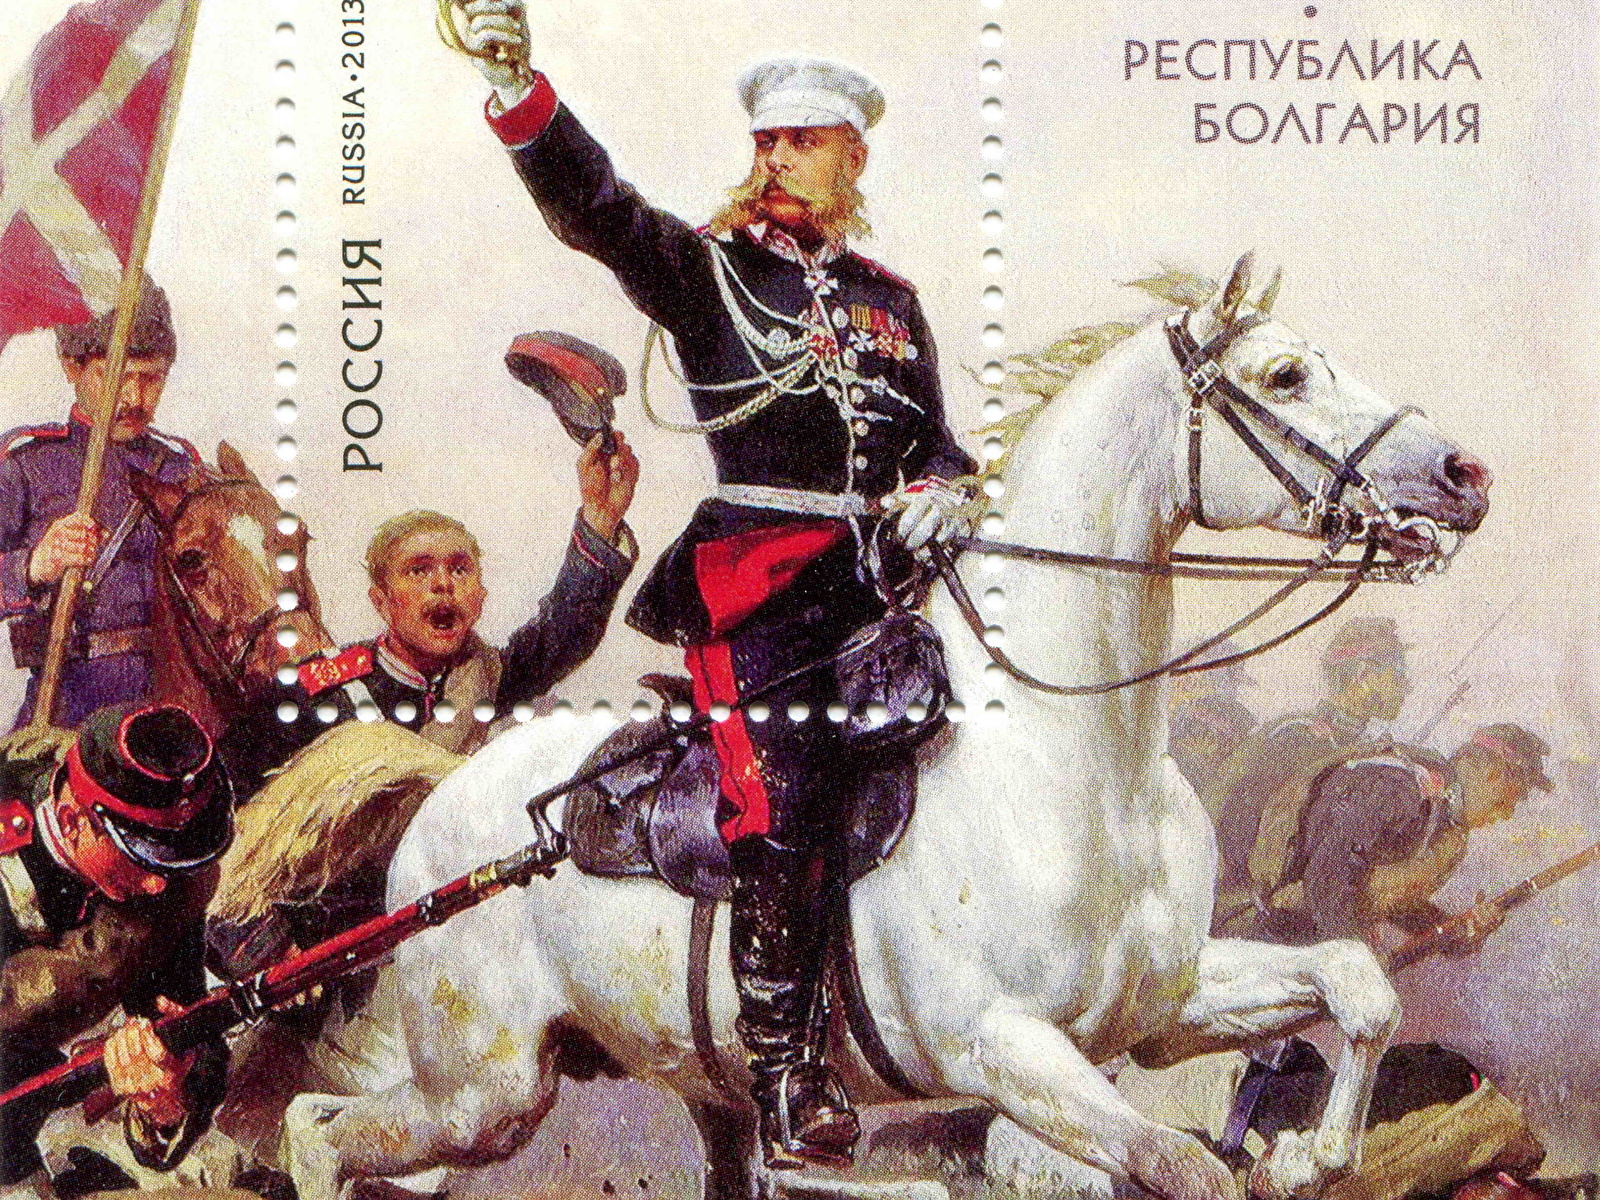 Укажите главнокомандующего русской армией изображенного на картине. Генерал Скобелев белый генерал. Генерал м д Скобелев на коне.